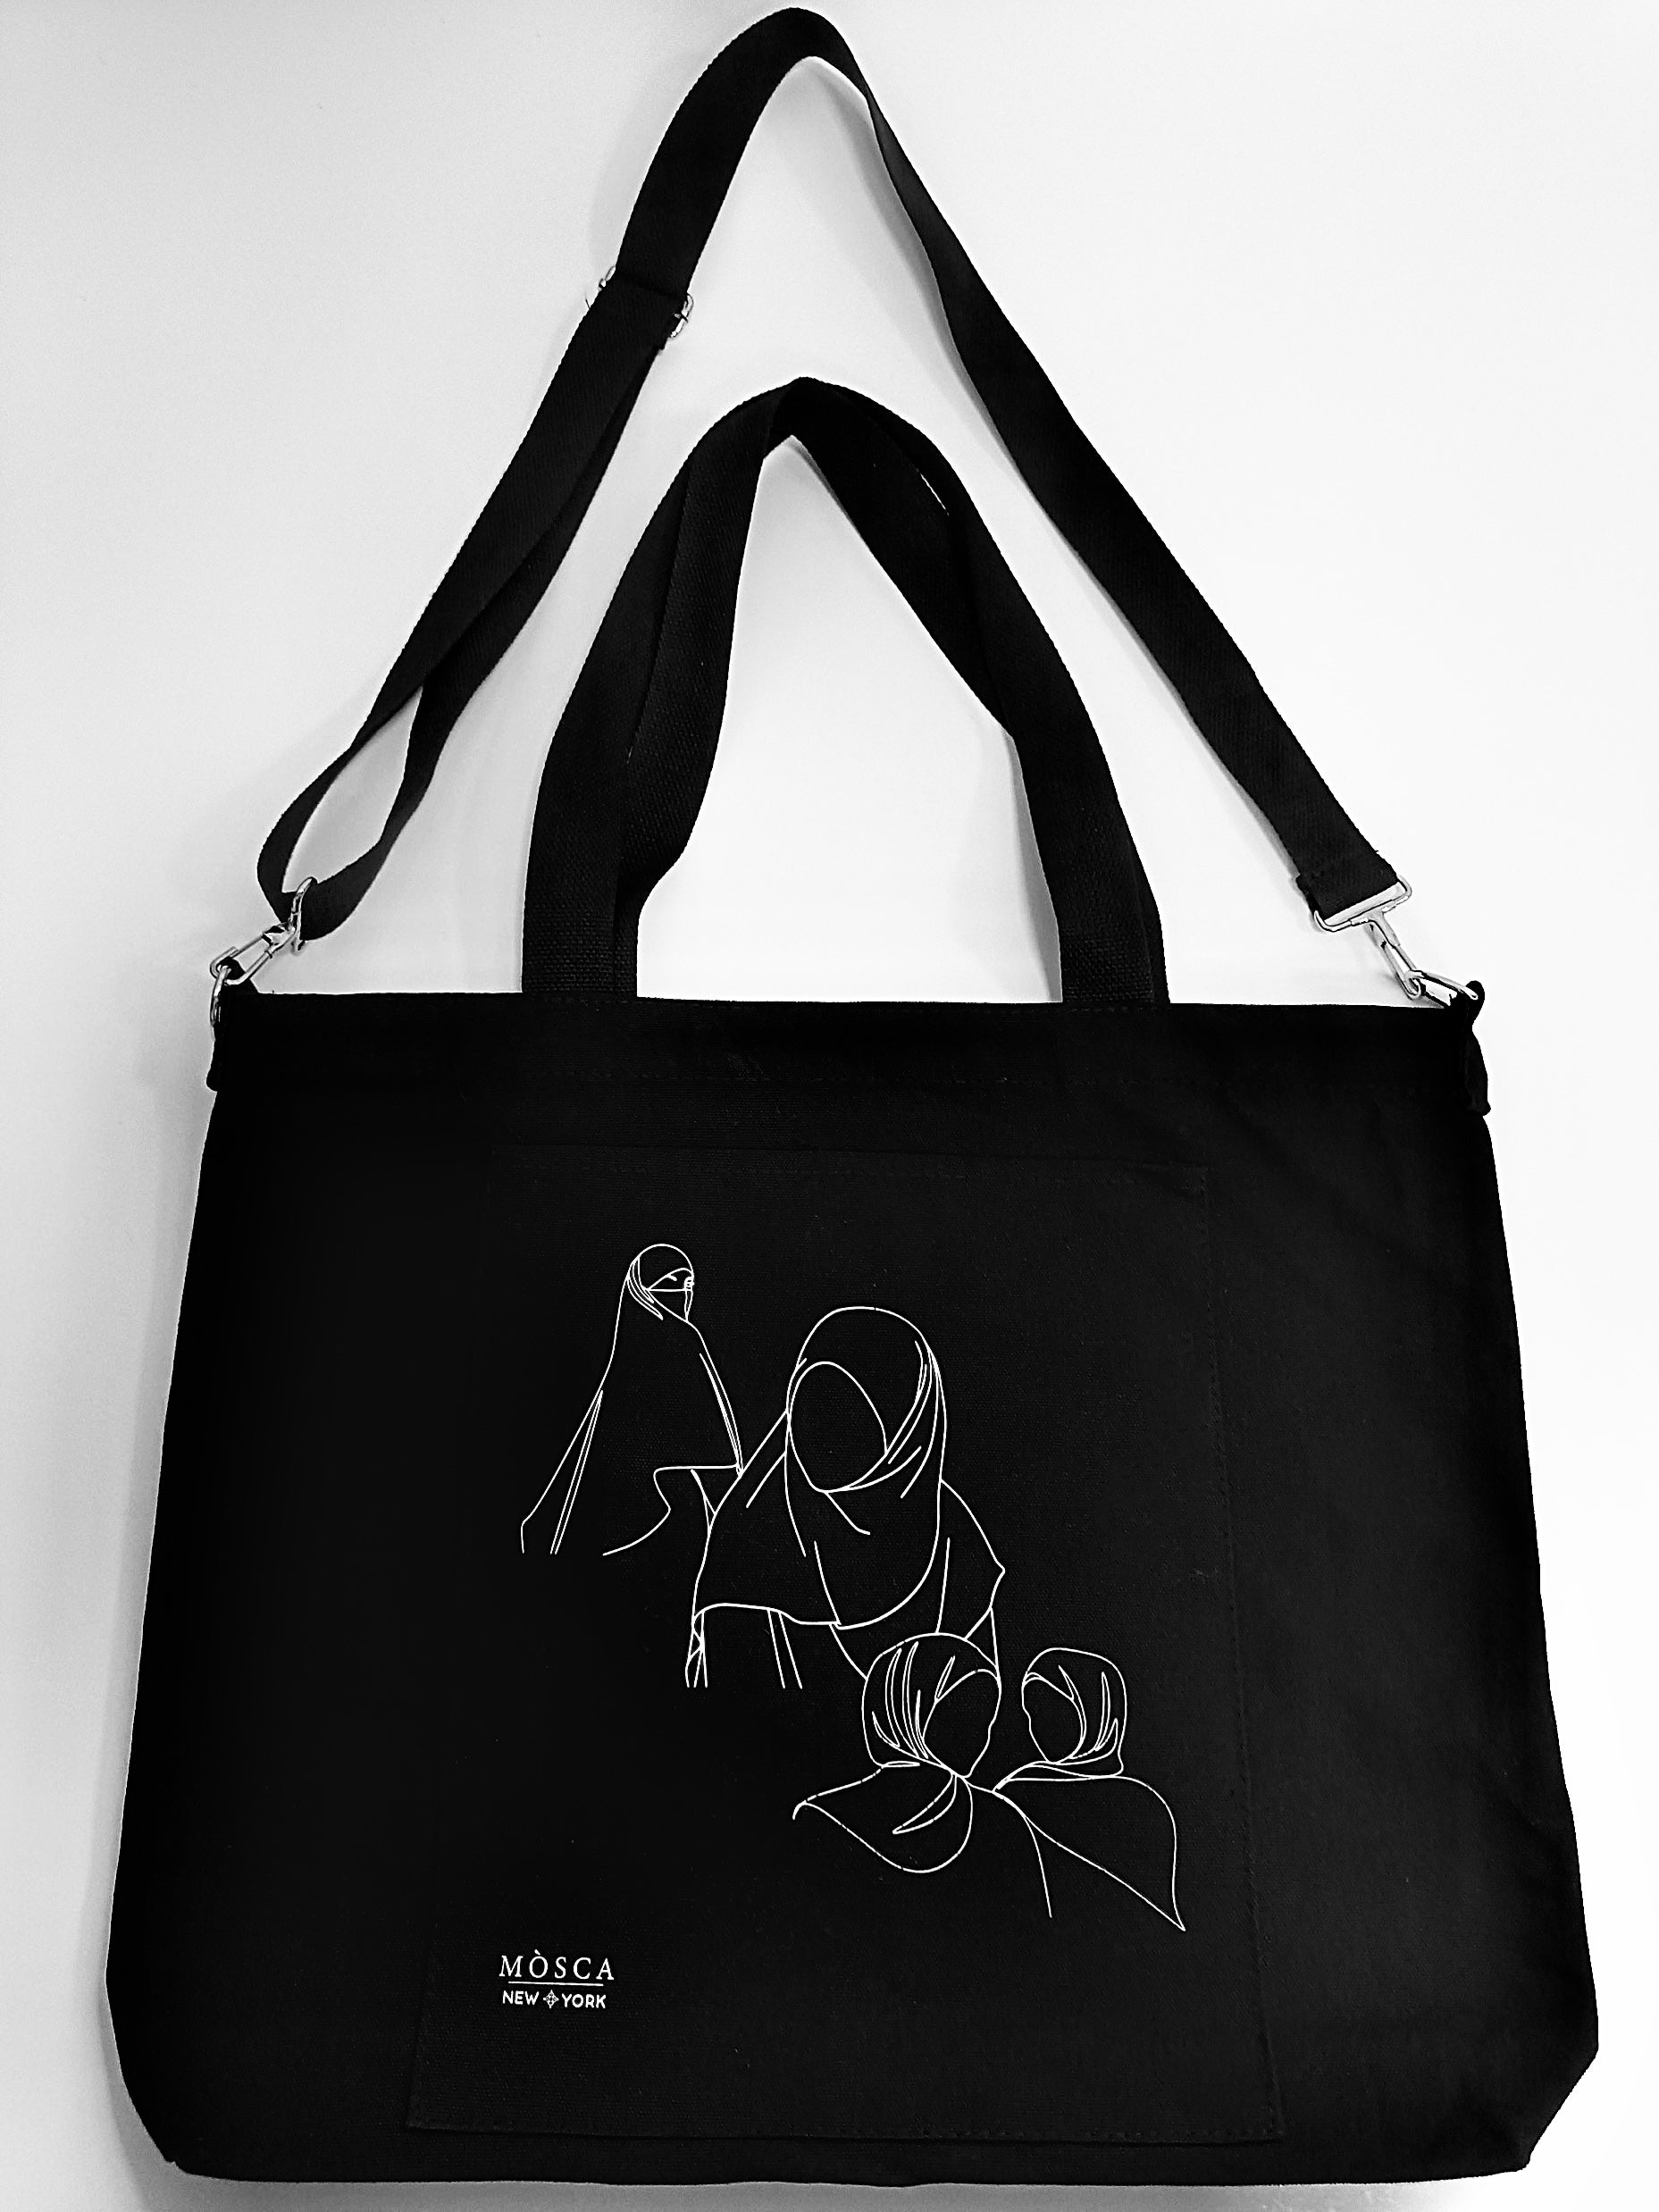 Mòsca’s Carryall Bag